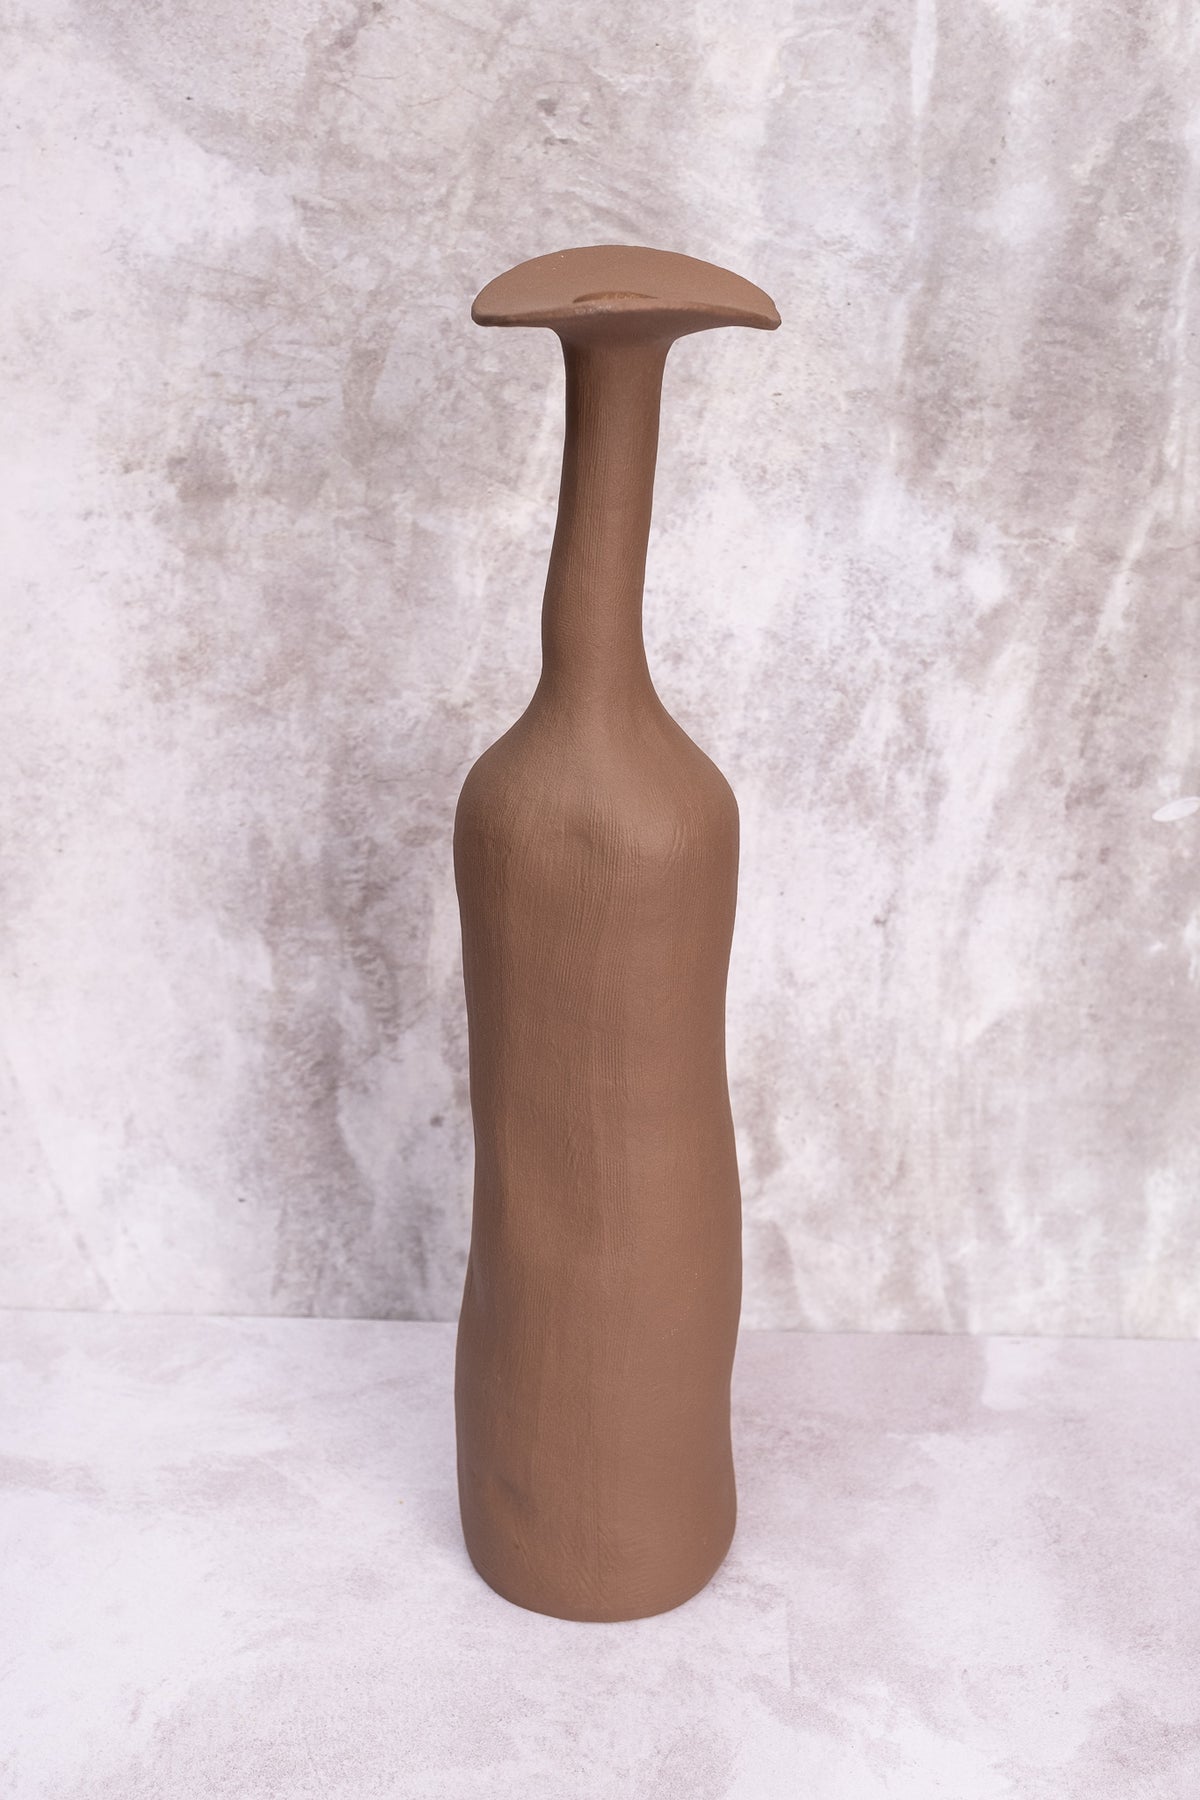 Tall Brown Wonky Ceramic Vase (Large)